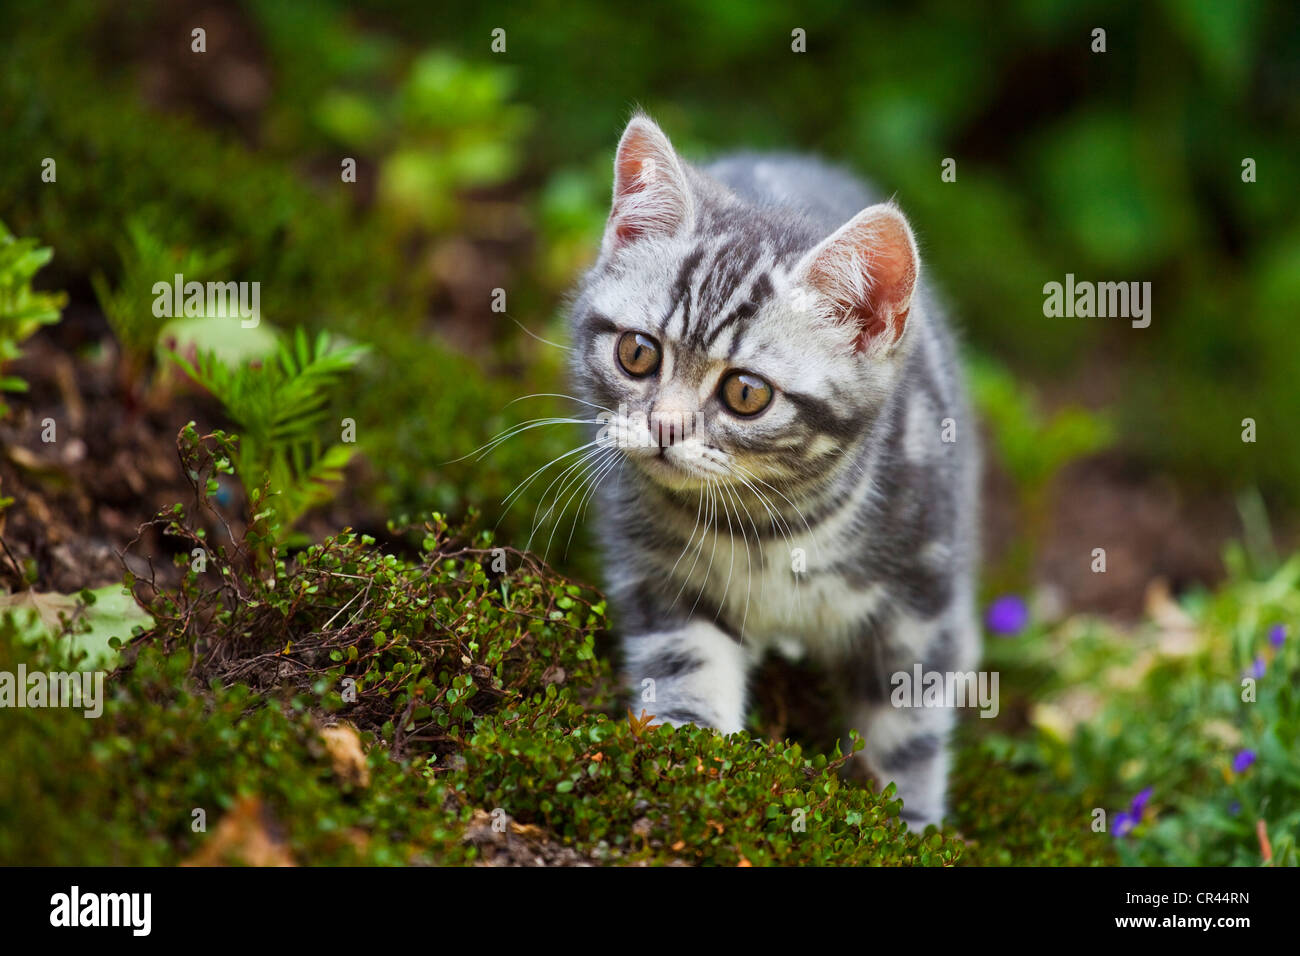 Little blue-golden tabby British Shorthair kitten in the garden Stock Photo